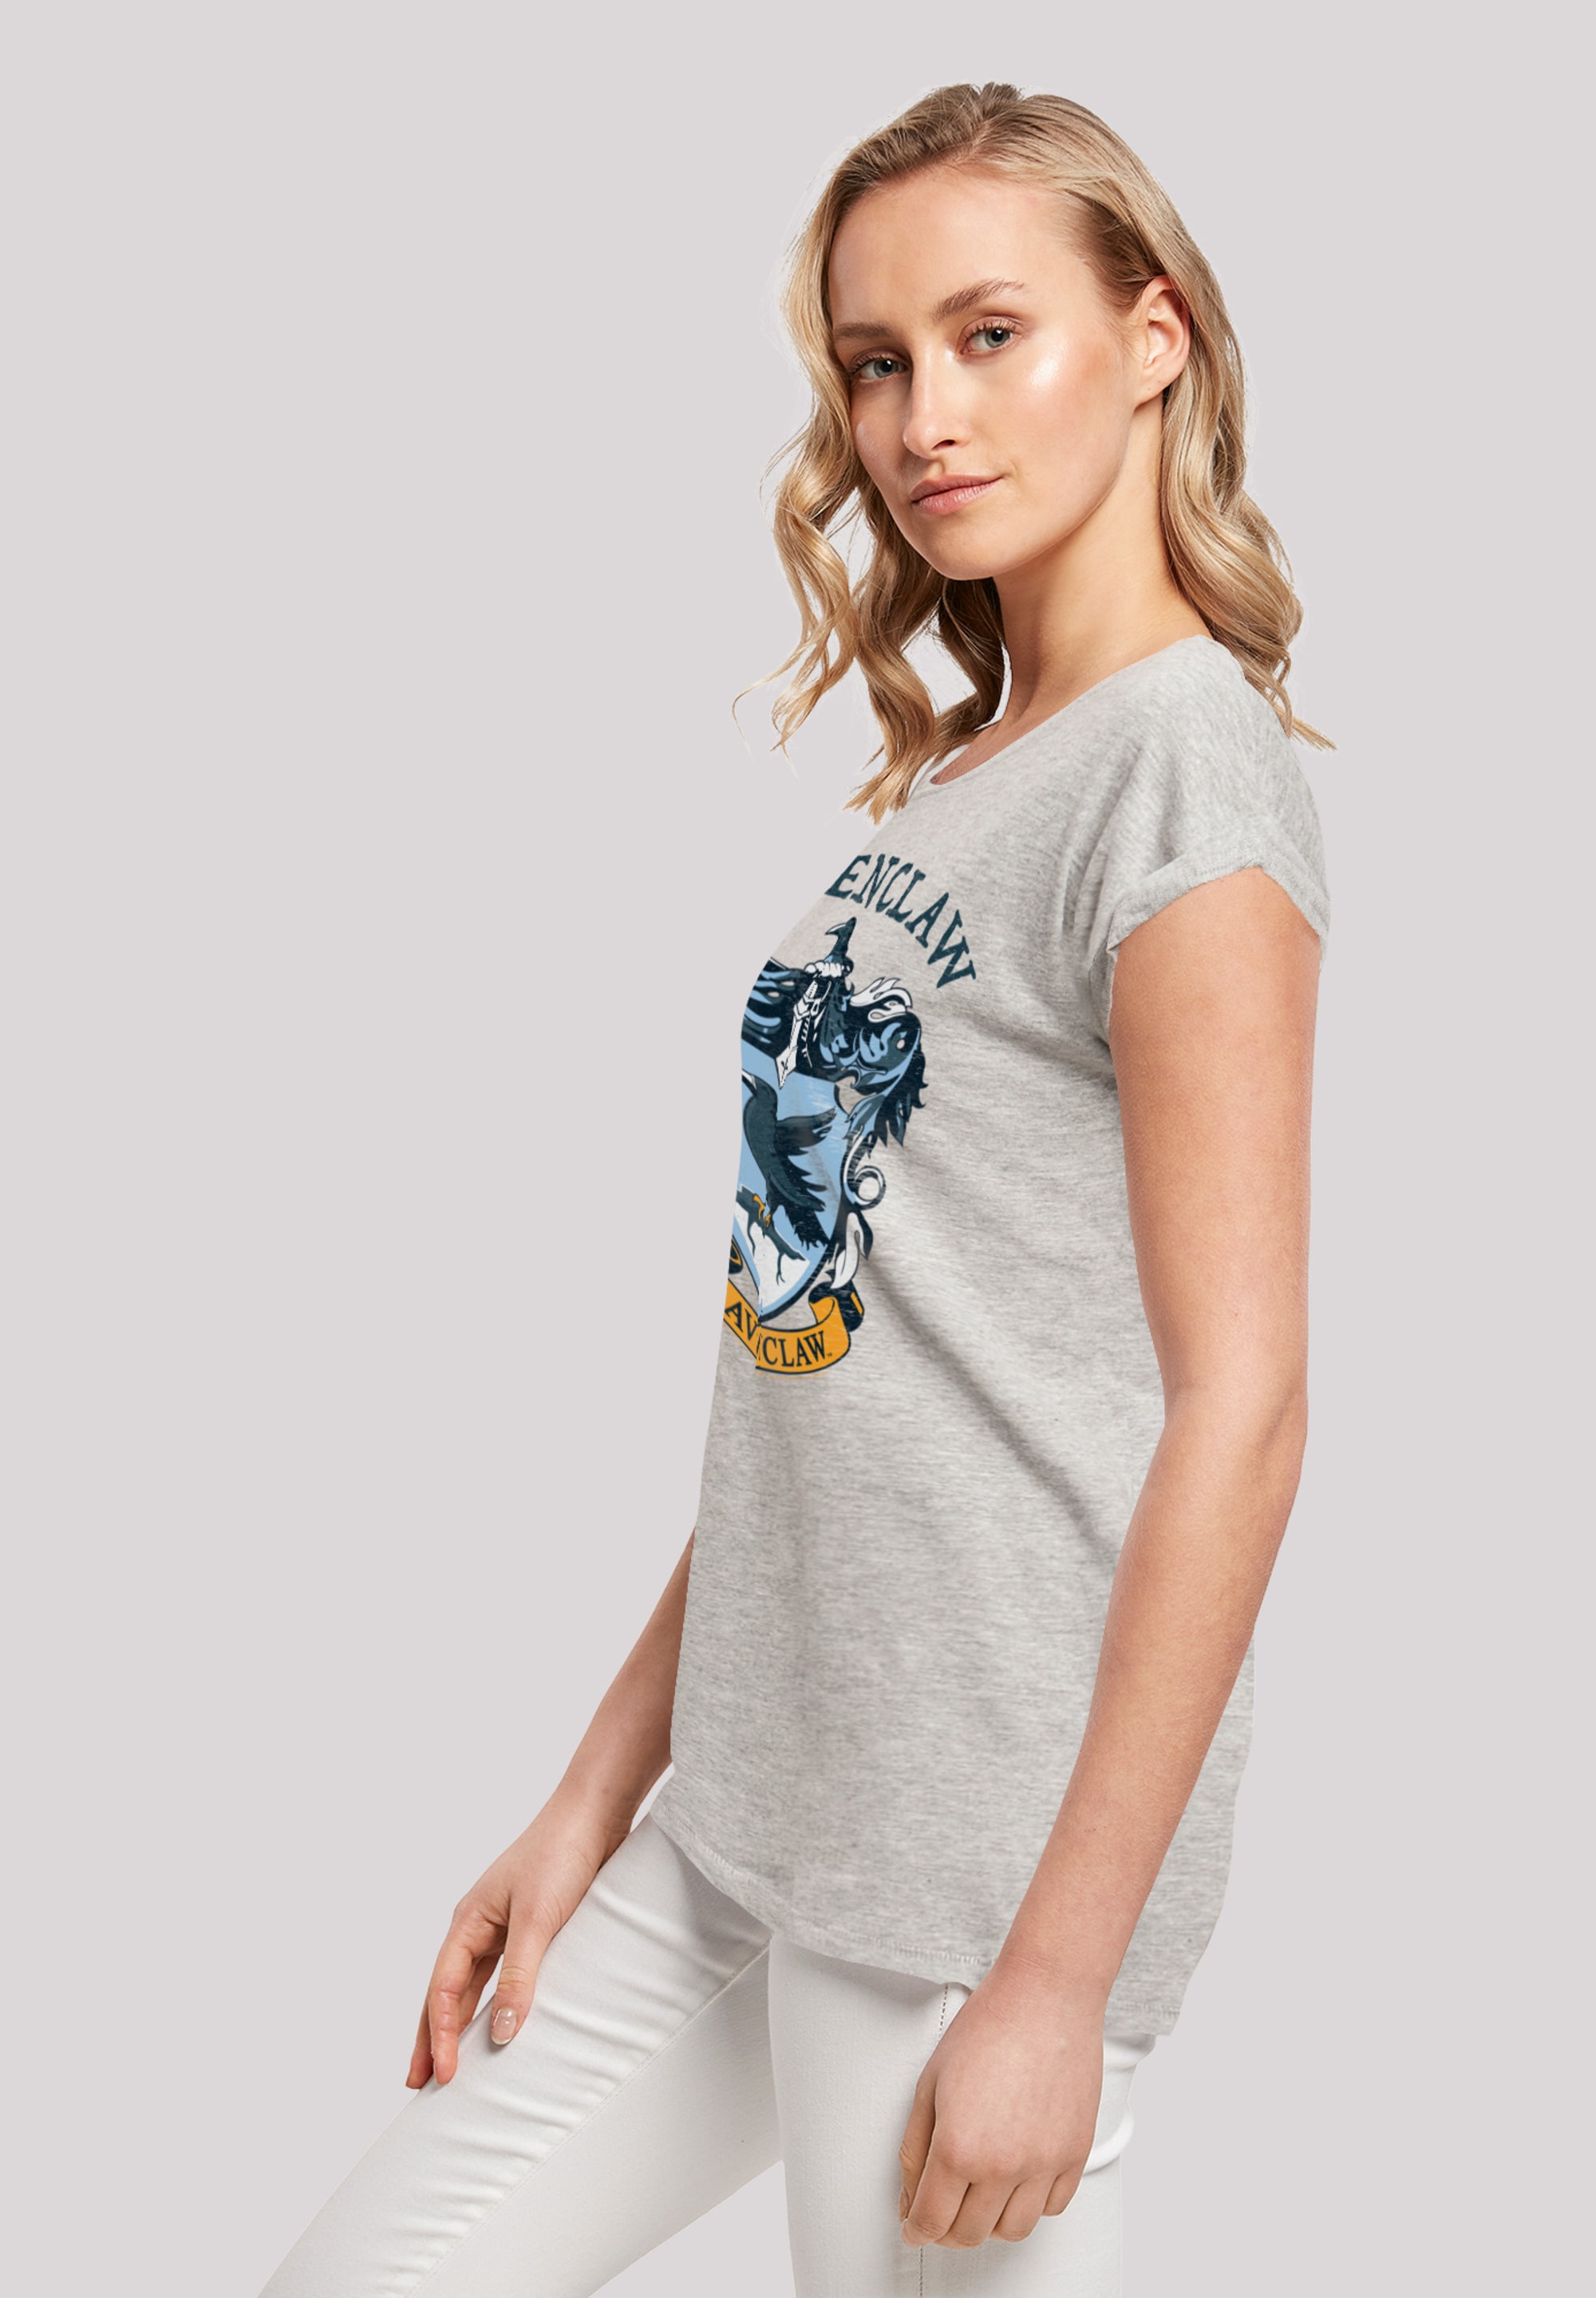 Potter Crest«, BAUR | »Harry Ravenclaw für T-Shirt F4NT4STIC kaufen Print